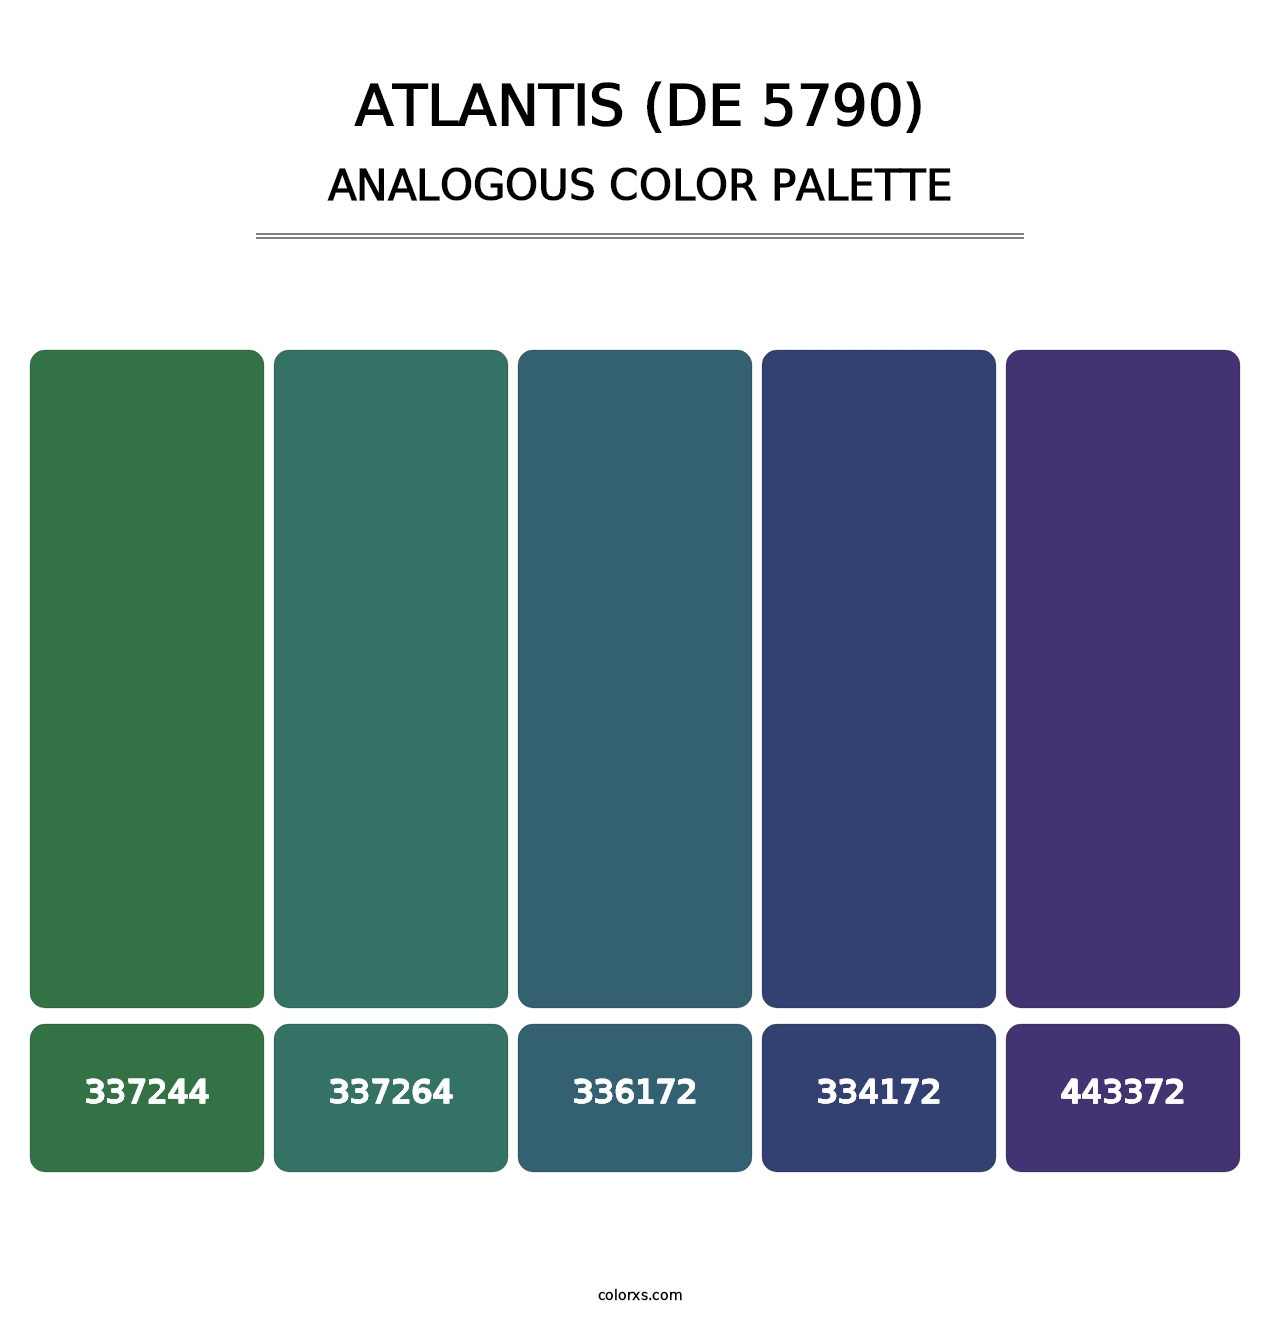 Atlantis (DE 5790) - Analogous Color Palette